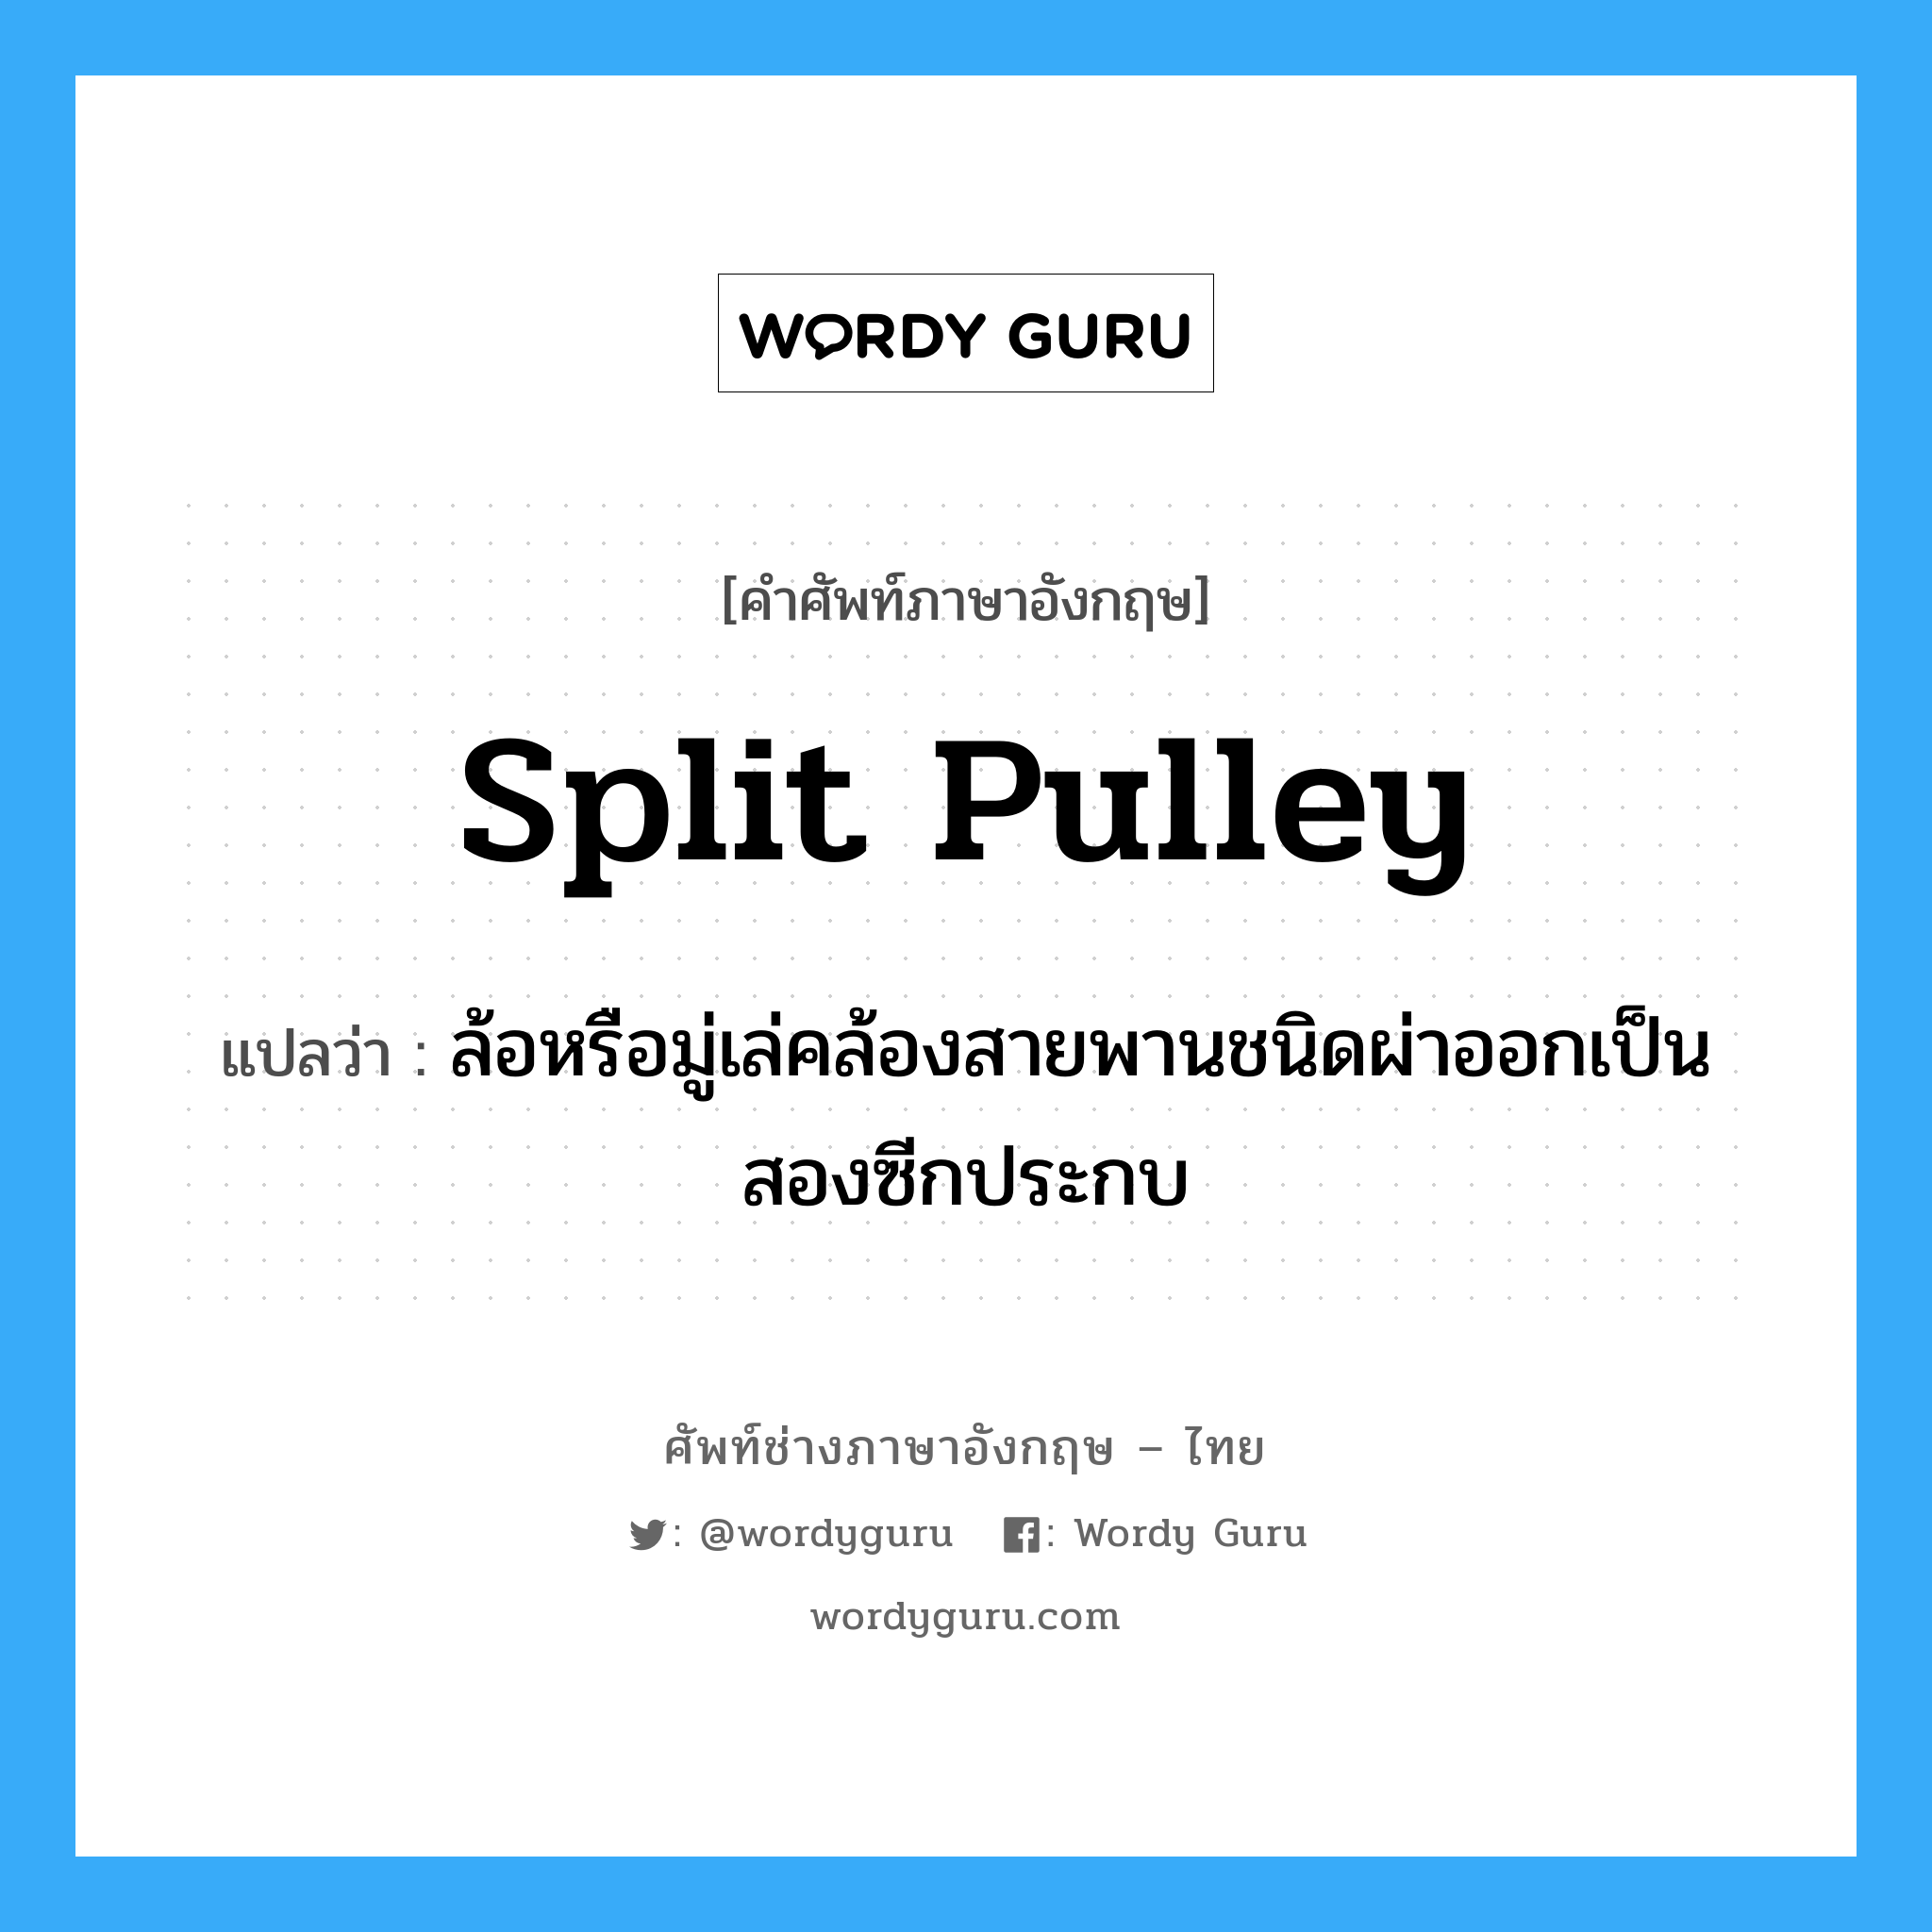 split pulley แปลว่า?, คำศัพท์ช่างภาษาอังกฤษ - ไทย split pulley คำศัพท์ภาษาอังกฤษ split pulley แปลว่า ล้อหรือมู่เล่คล้องสายพานชนิดผ่าออกเป็นสองซีกประกบ